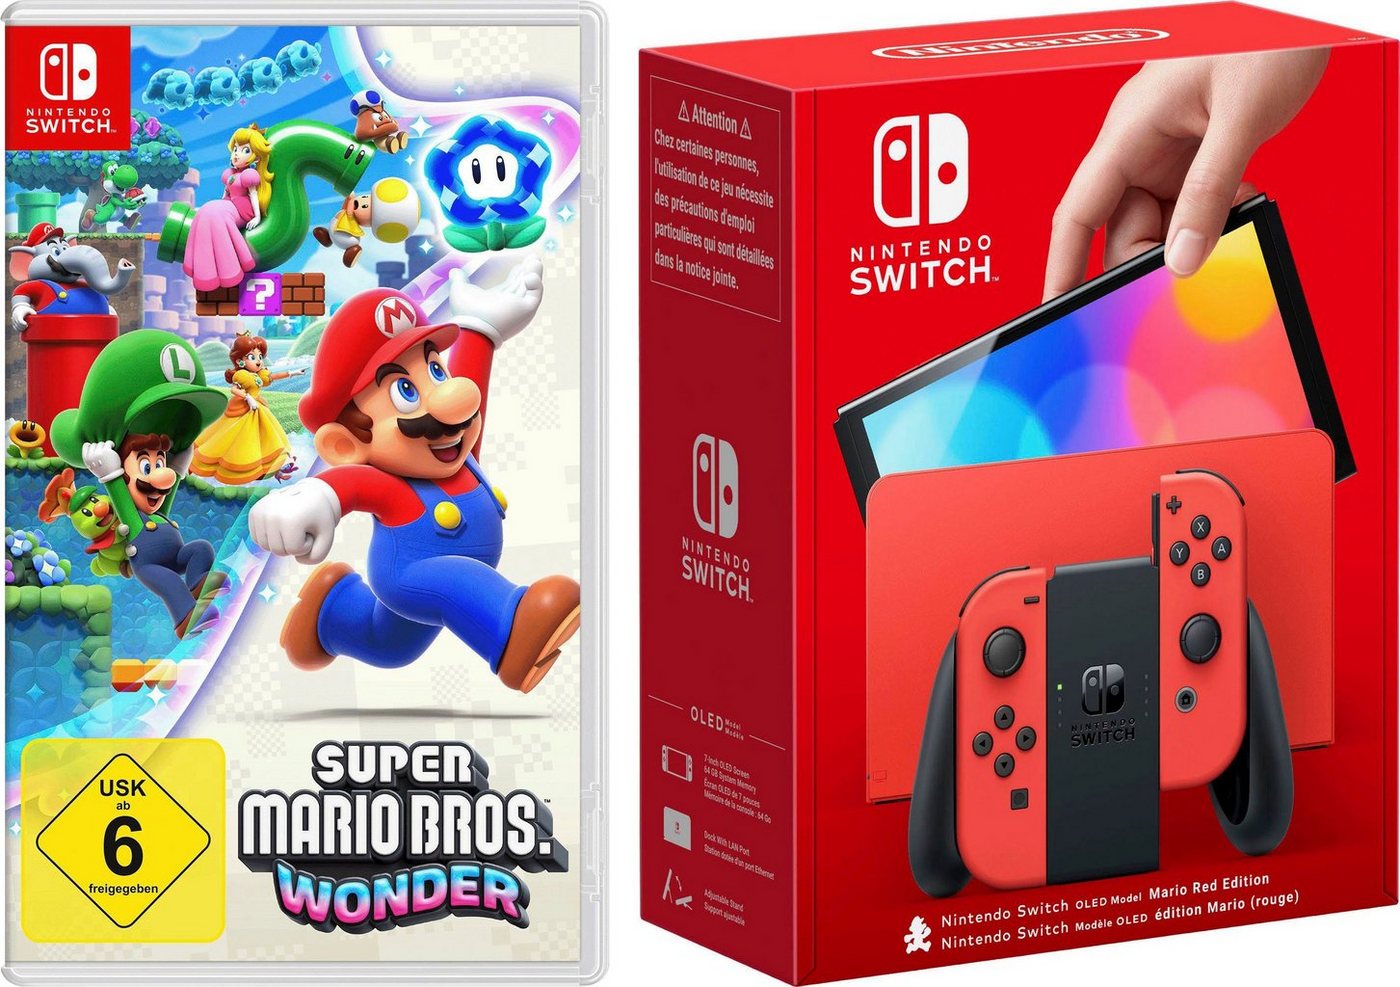 Nintendo Switch OLED Mario Edition + Super Mario Bros. Wonder von Nintendo Switch